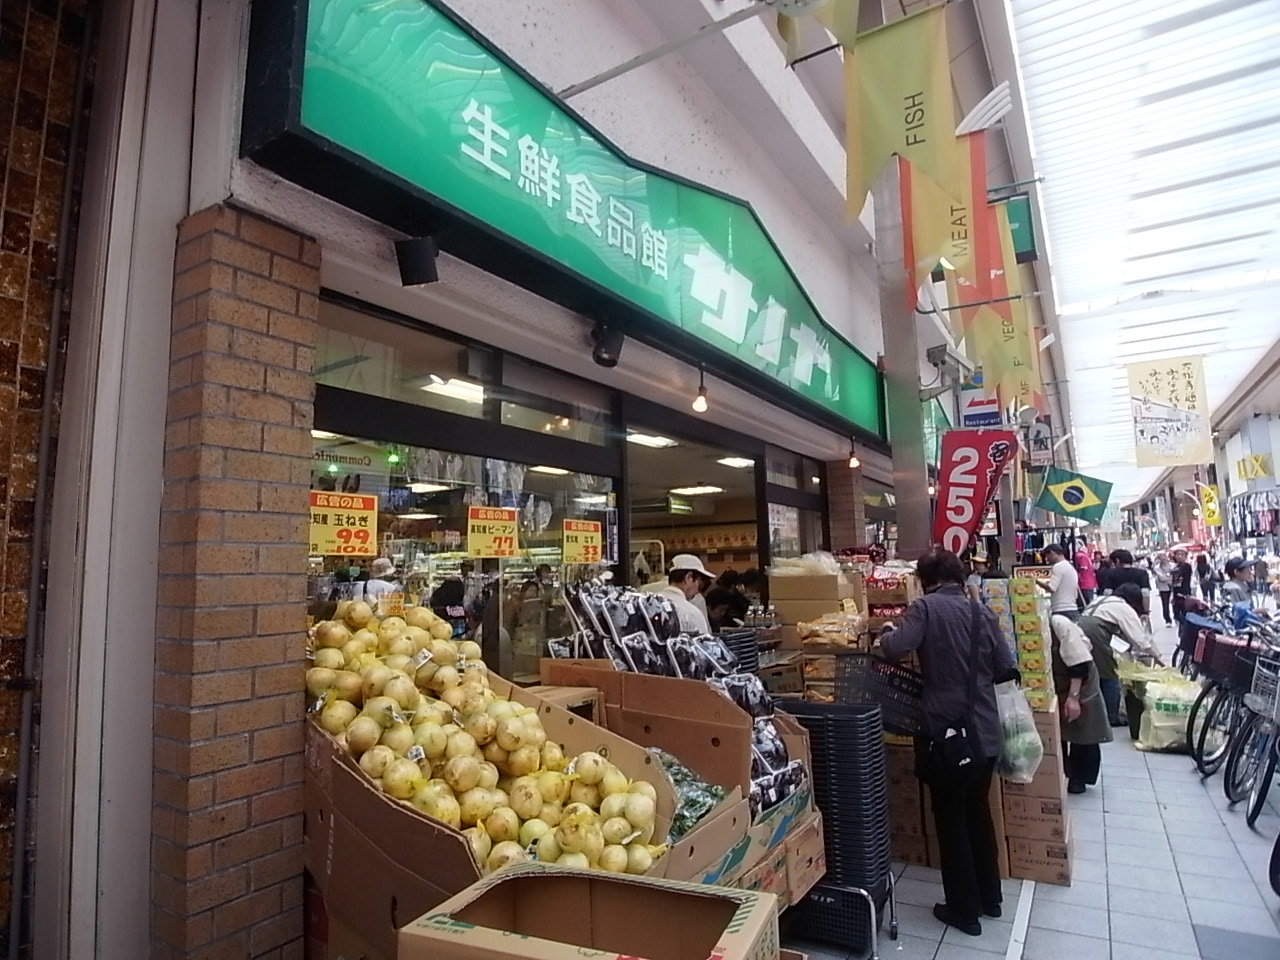 Supermarket. 413m to Super Sanoya Banshoji store (Super)